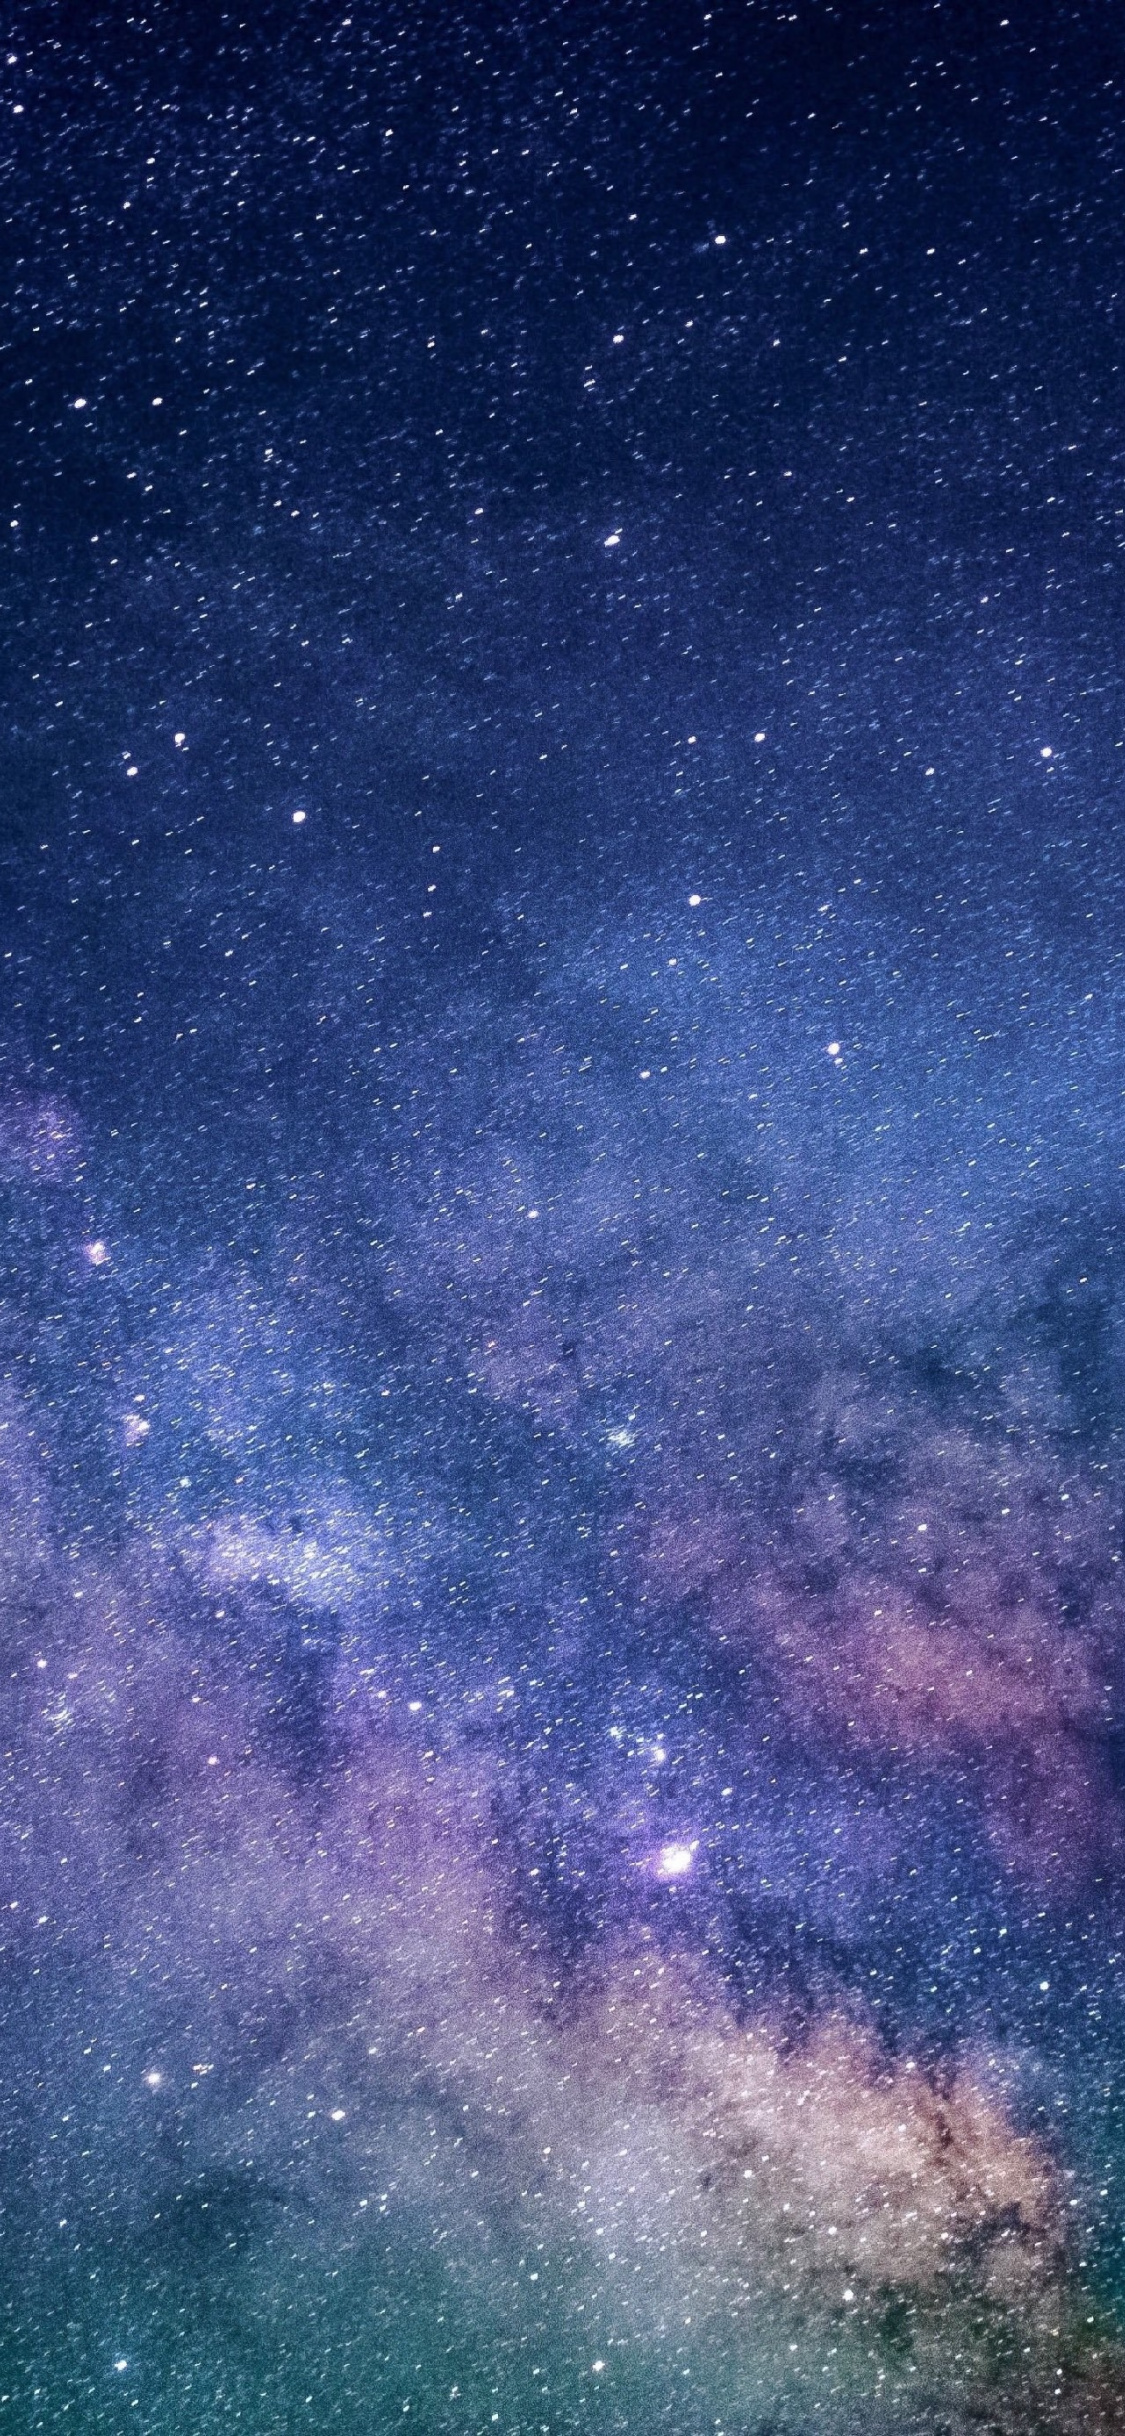 galaxie wallpaper hd,himmel,atmosphäre,weltraum,blau,lila